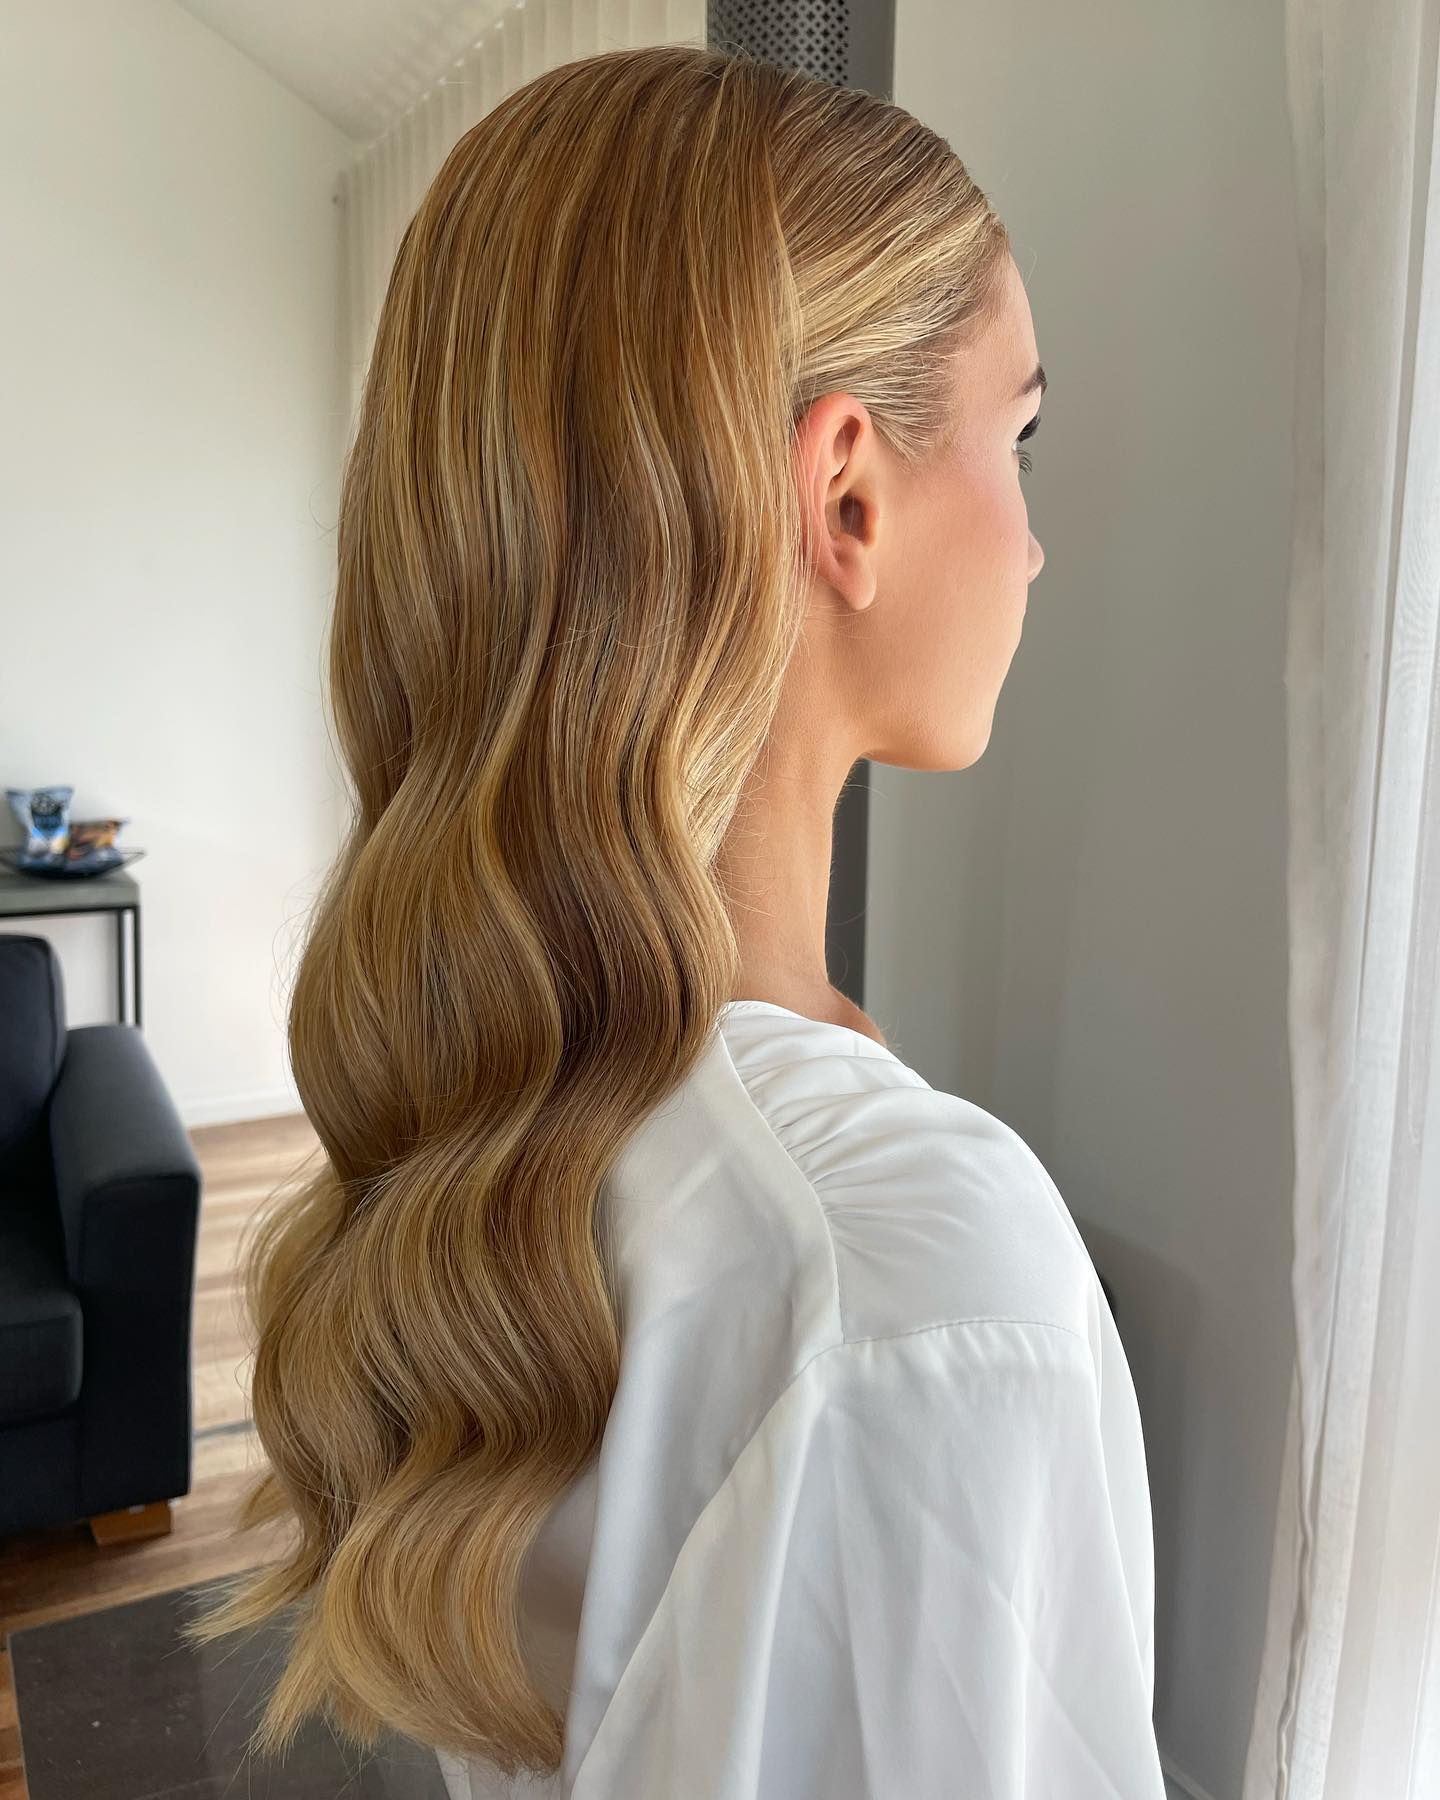 peinados para pelo suelto: las mejores ideas si eres invitada a una boda